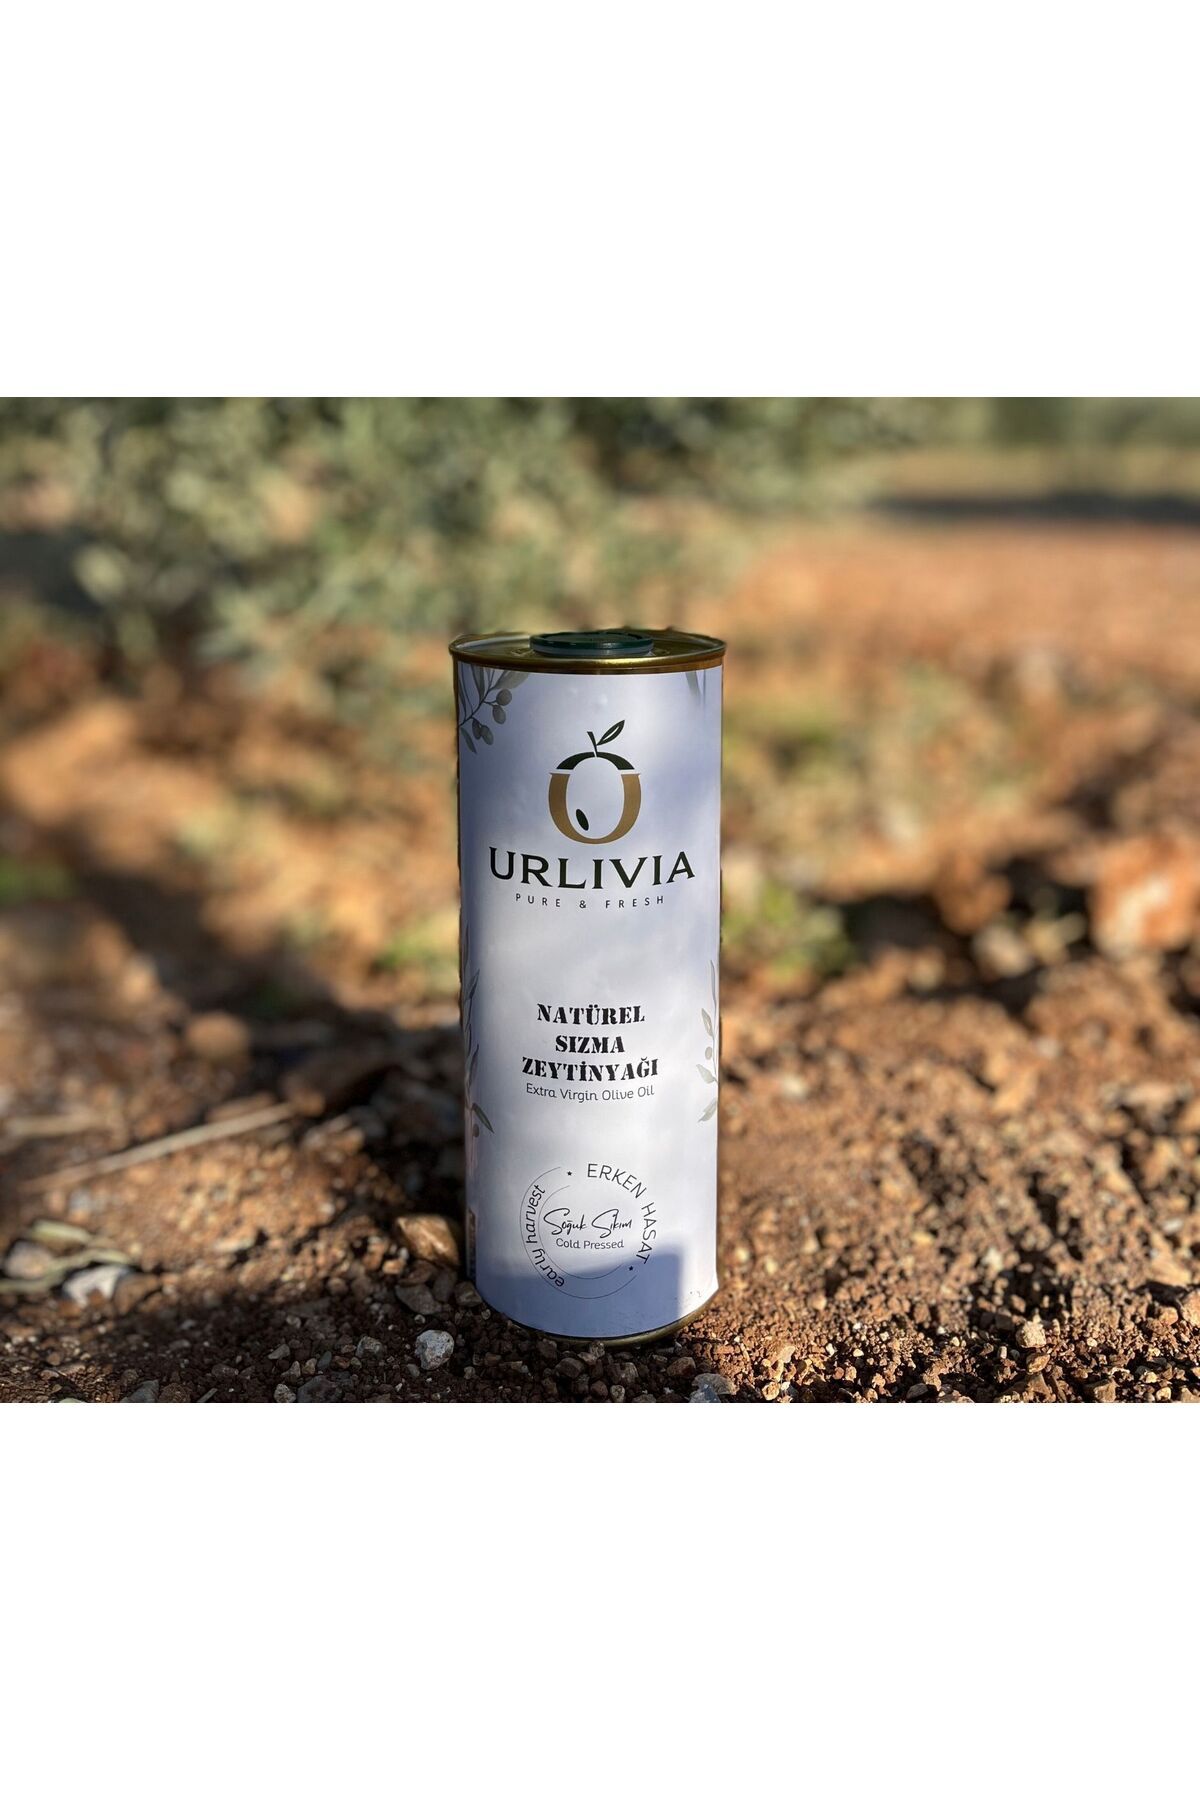 URLIVIA Pure Fresh Urlivia Natürel Sızma Zeytinyağı 1lt - Erken Hasat Soğuk Sıkım - 0,6 Asit